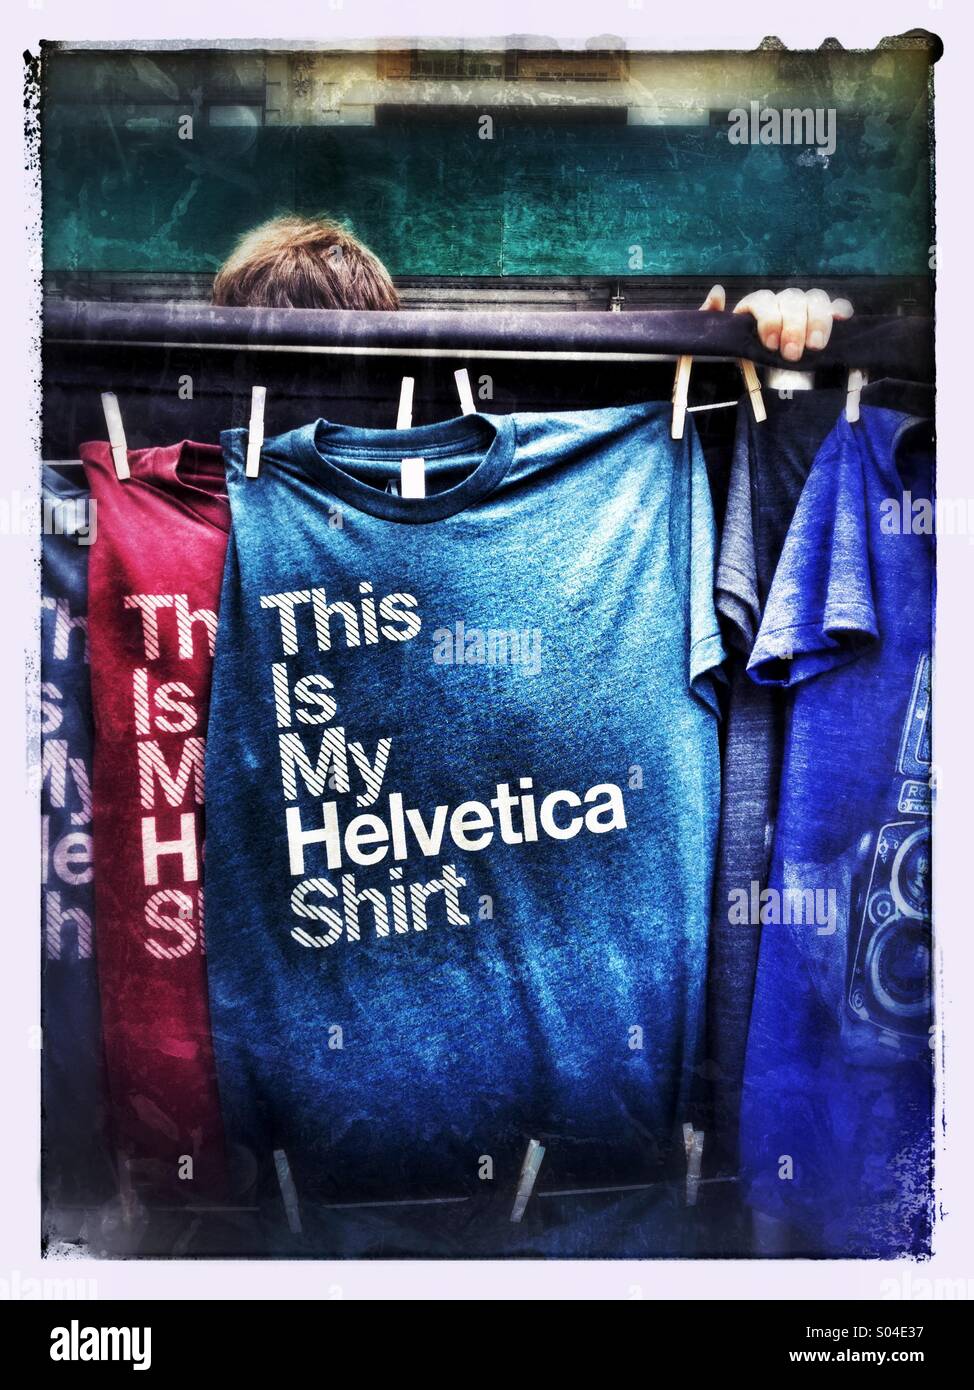 Vendeur de rue derrière la rangée de T-shirts qui disent "c'est ma chemise Helvetica' Banque D'Images